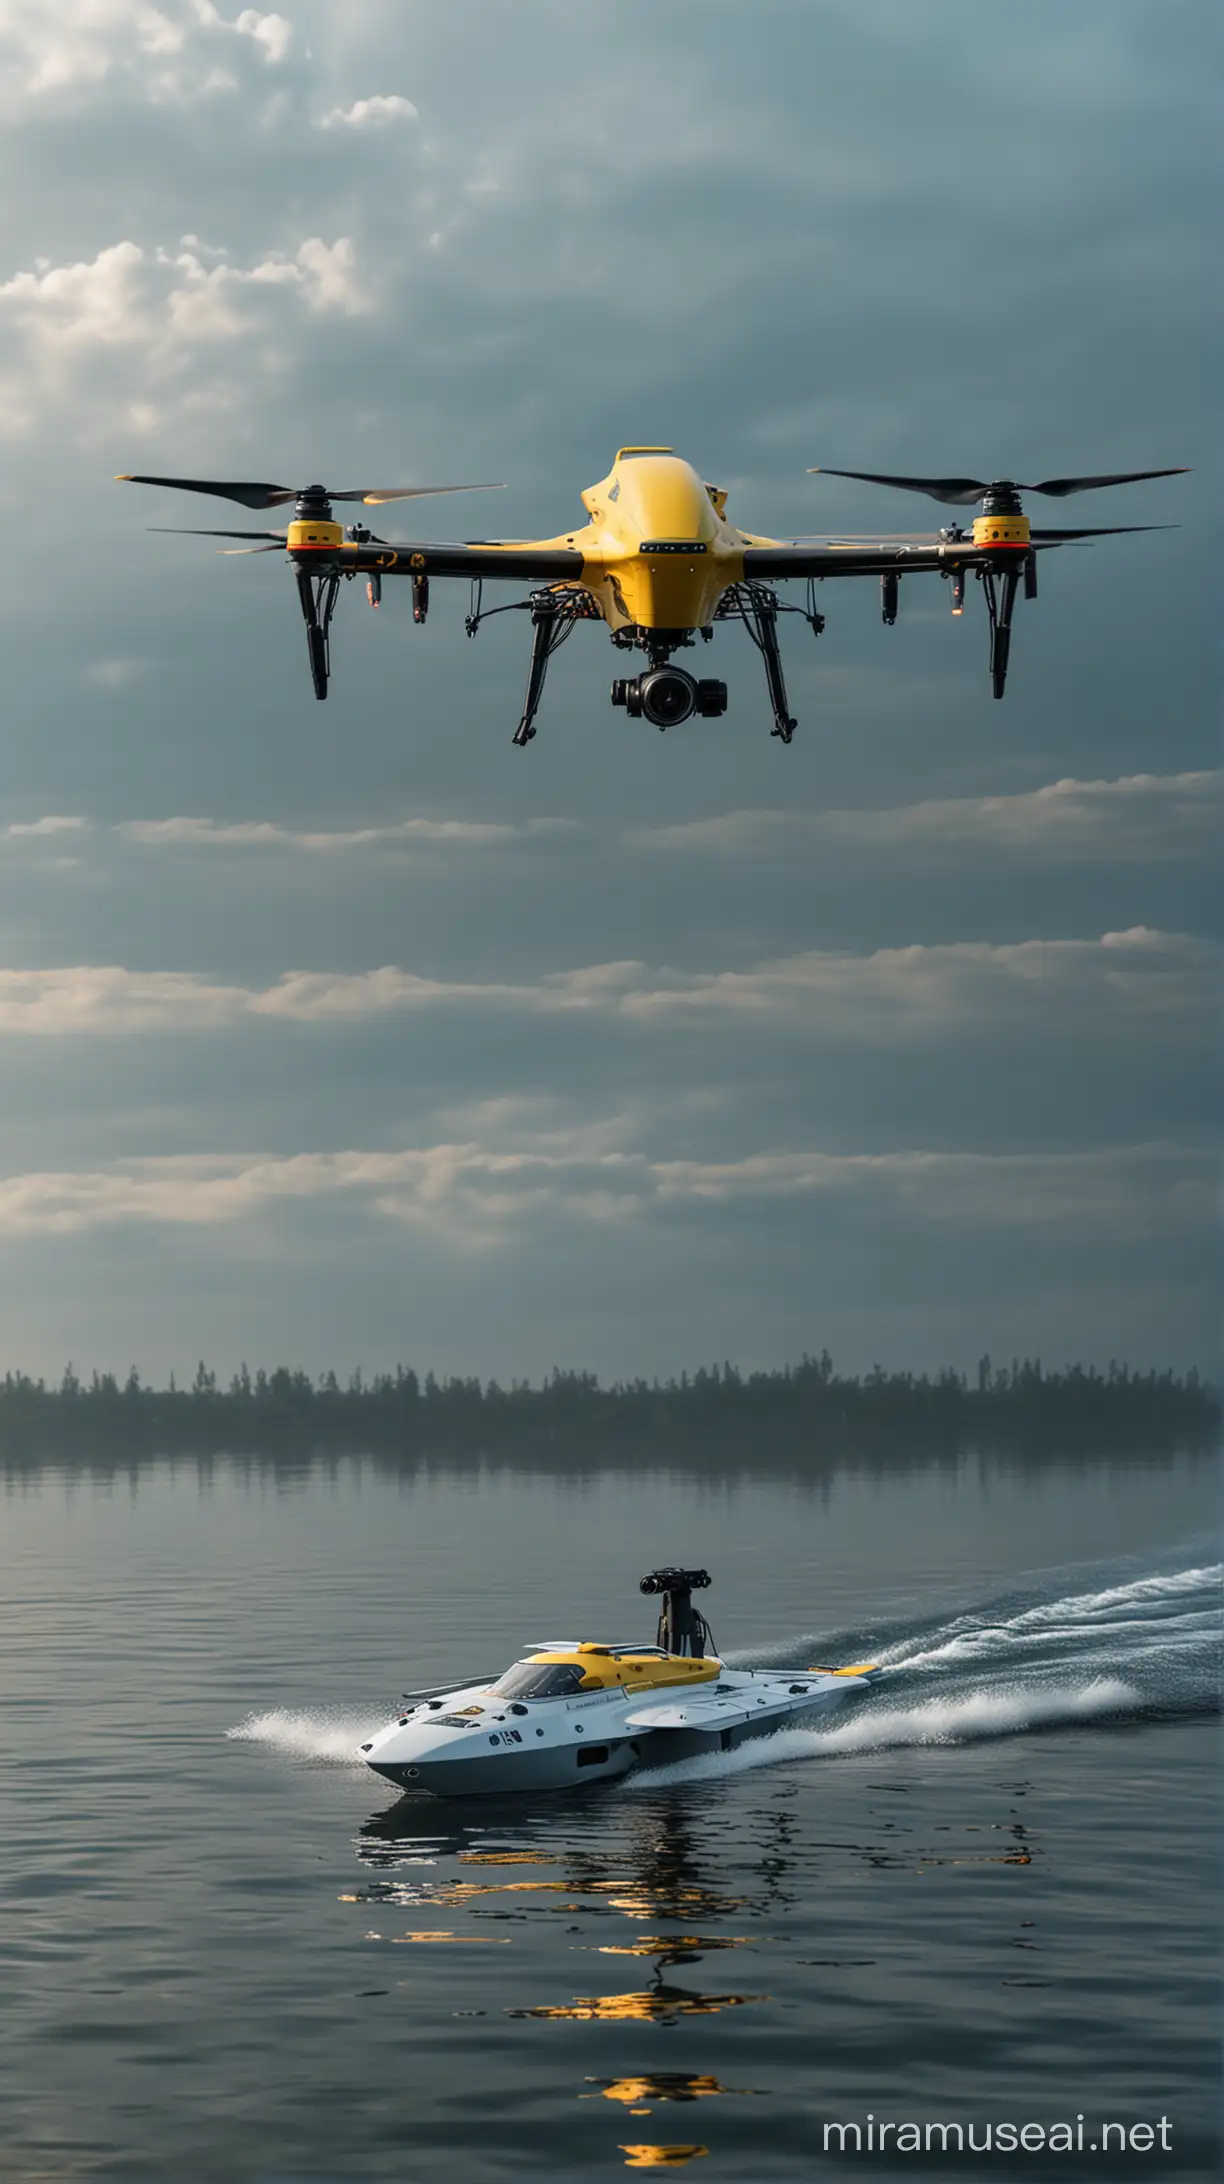 найсучасніший морський дрон  з українською символікою. І дрон, котрі пливе по воді. Гиперреалестично, 8к зображення. В стилі кінематограф.